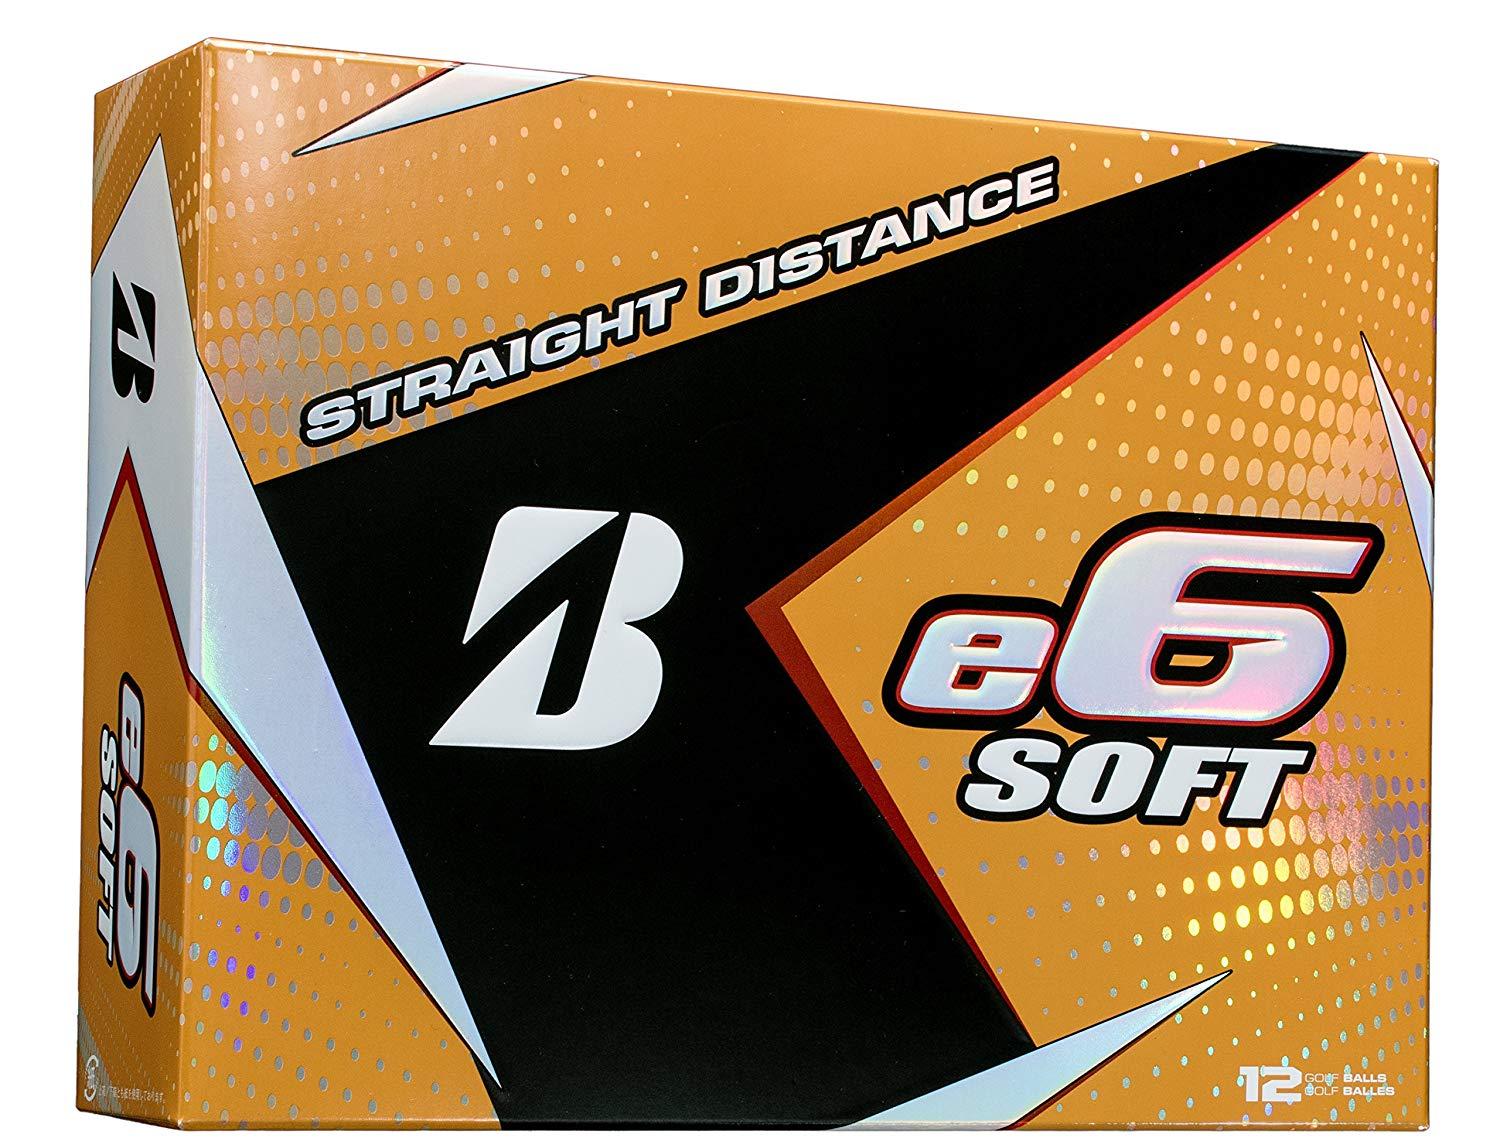 White Box with Orange B Logo - Amazon.com : BRIDGESTONE GOLF e6 SOFT Golf Balls, White, Soft Dozen